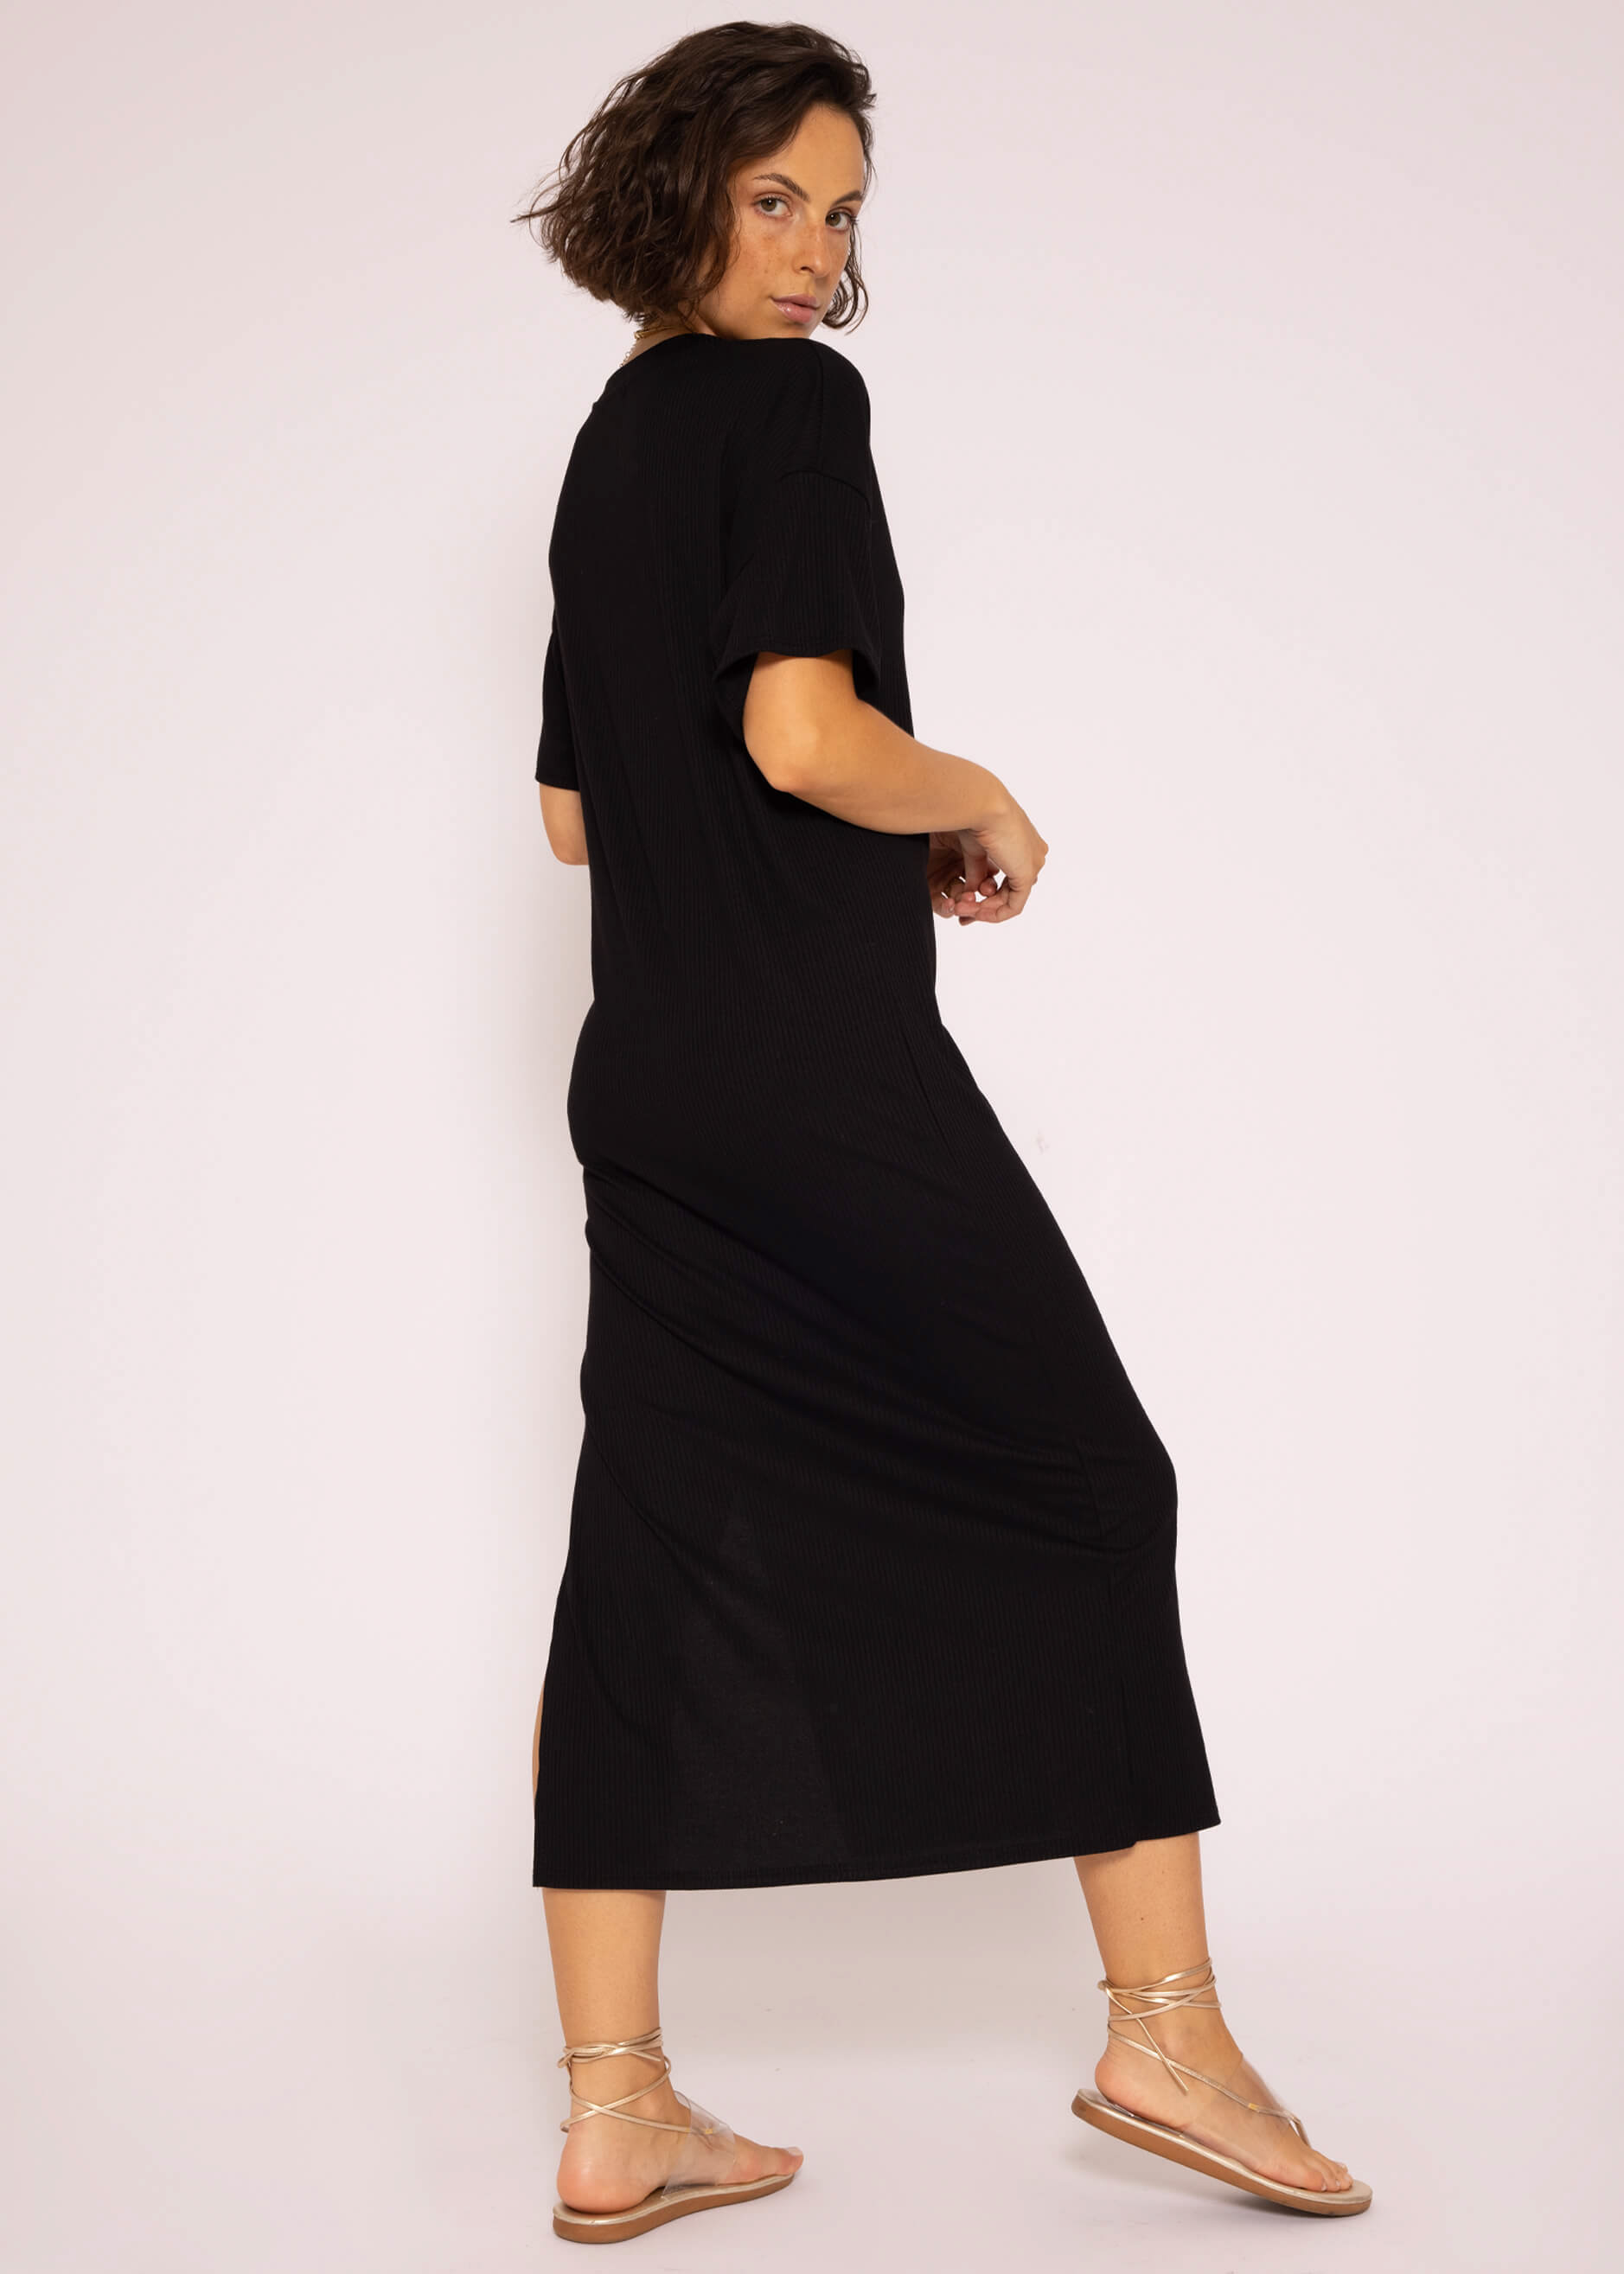 | | mit Kleider schwarz Bekleidung Maxi | Schlitz, SASSYCLASSY Jersey Kleid Rip